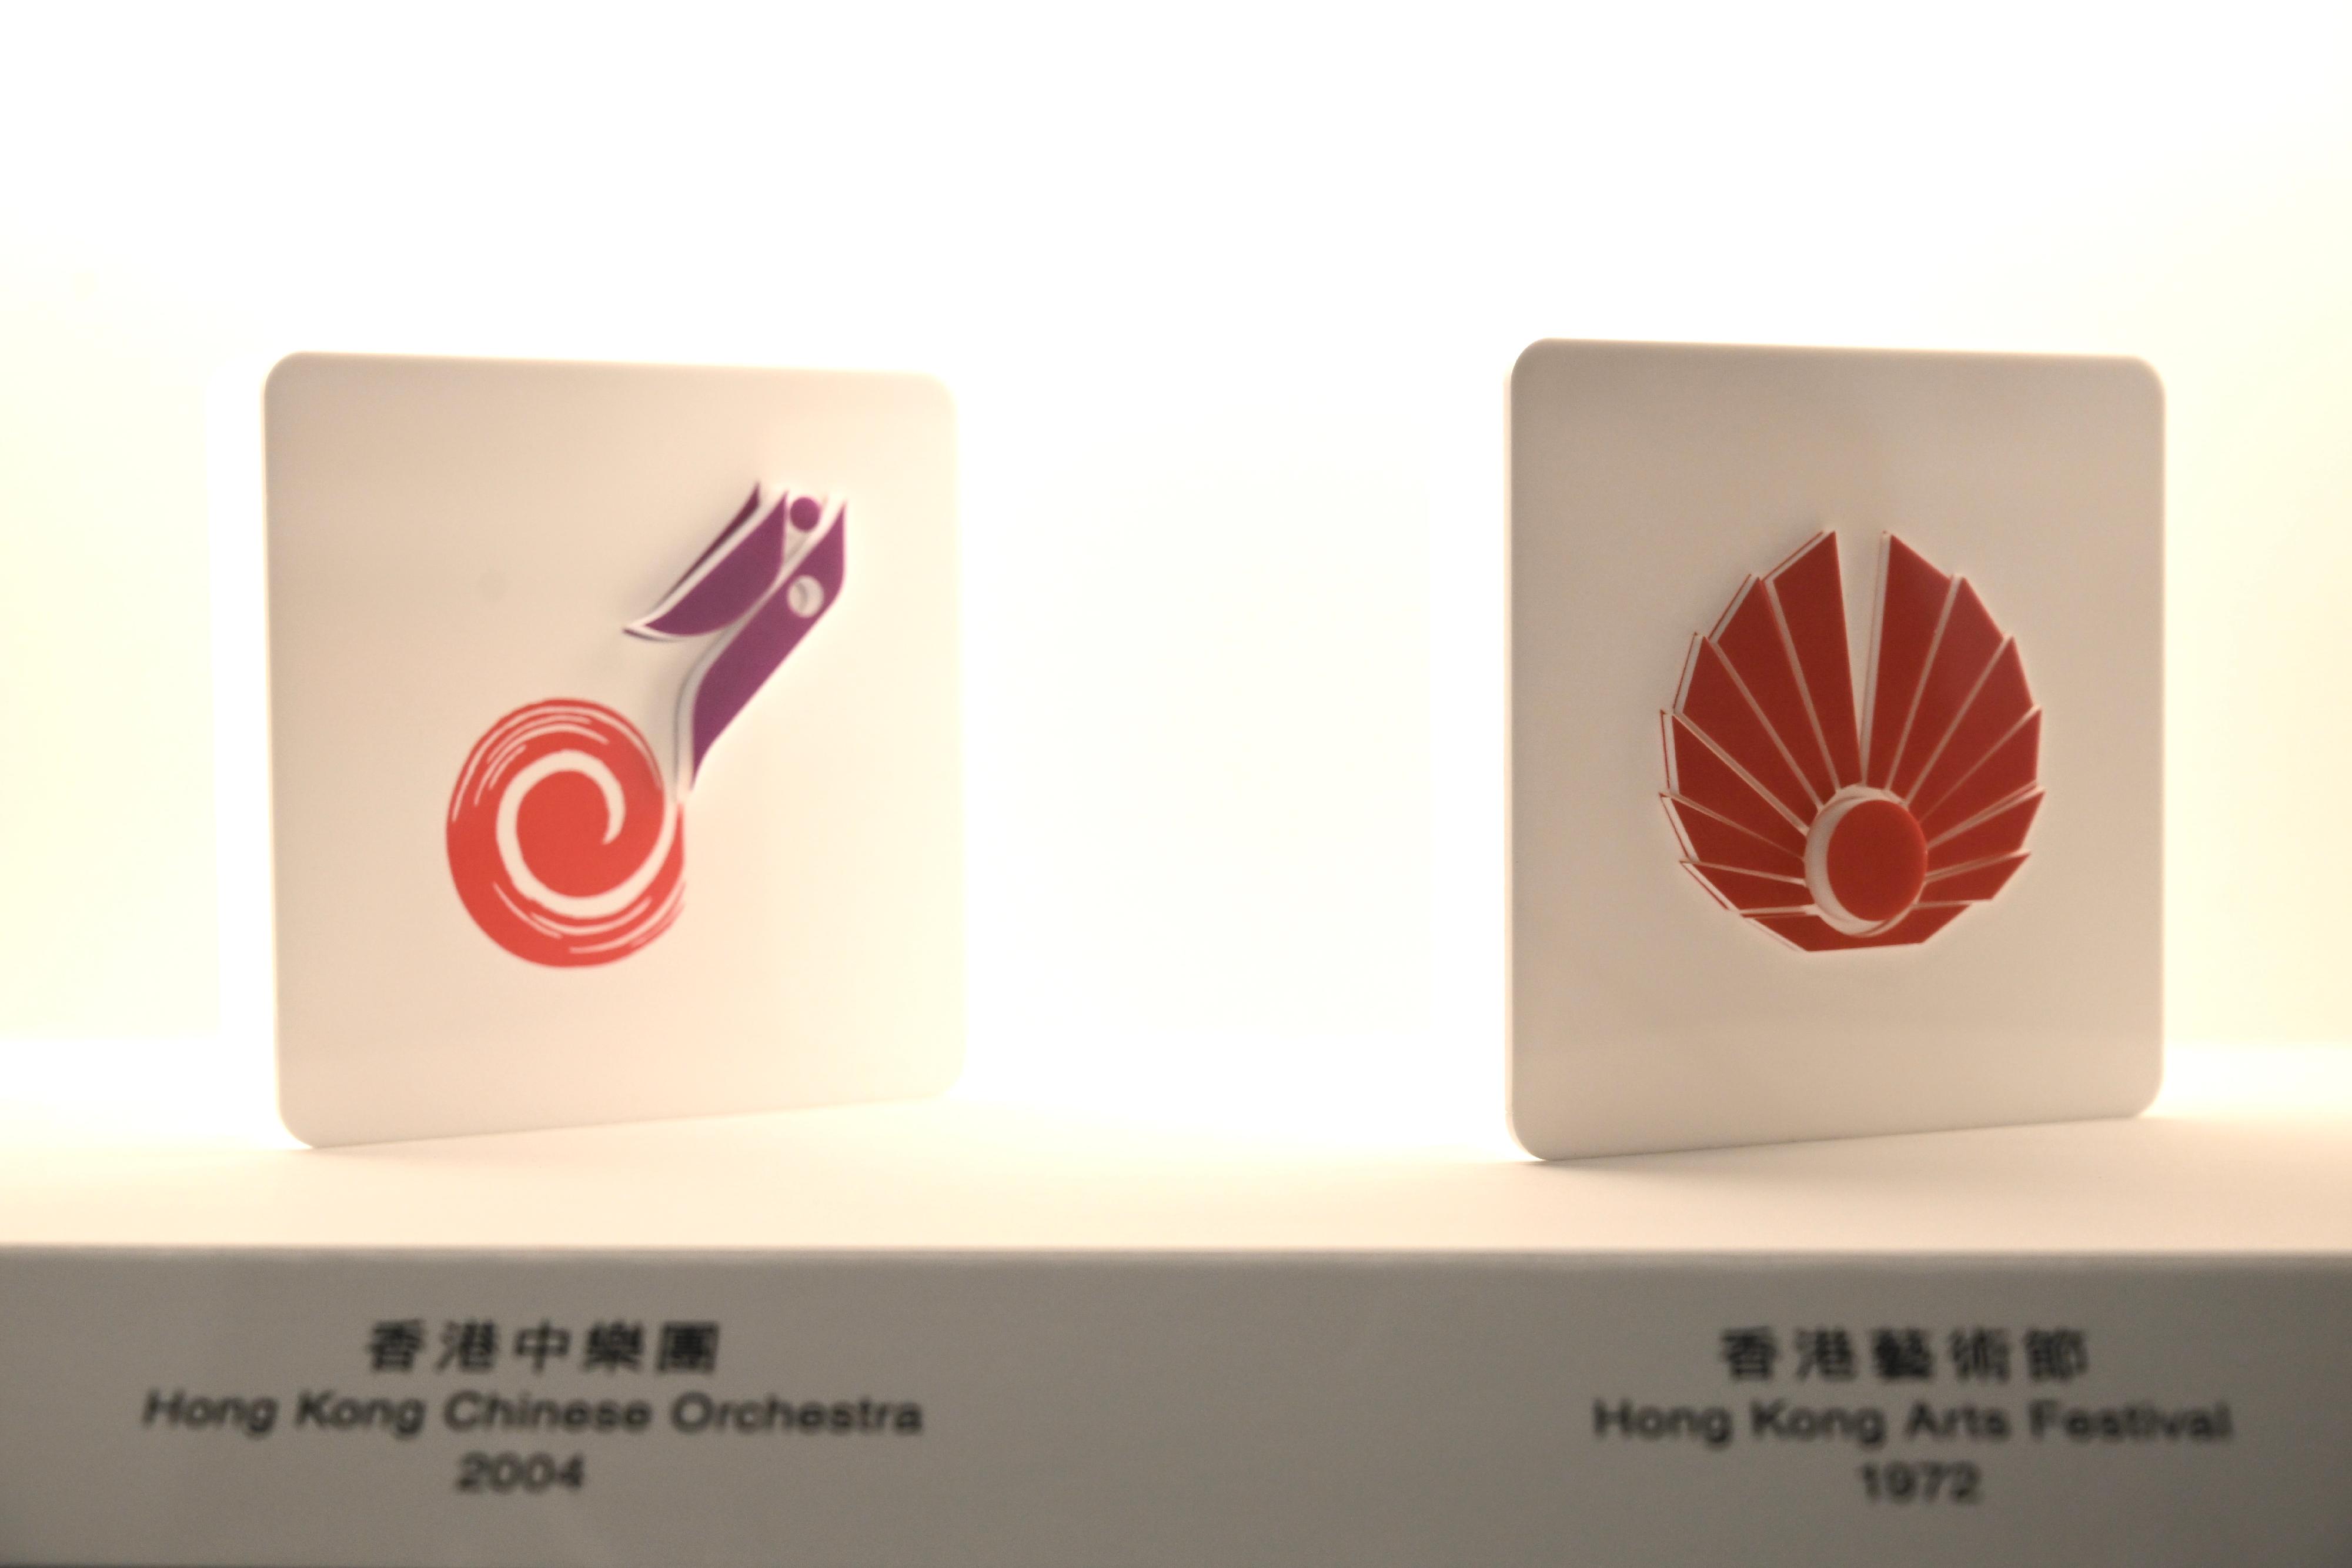 「迁想无界──韩秉华艺术与设计展」开幕典礼今日（十一月十四日）在香港文化博物馆举行。图示香港中乐团（左）和香港艺术节（右）的标志设计。